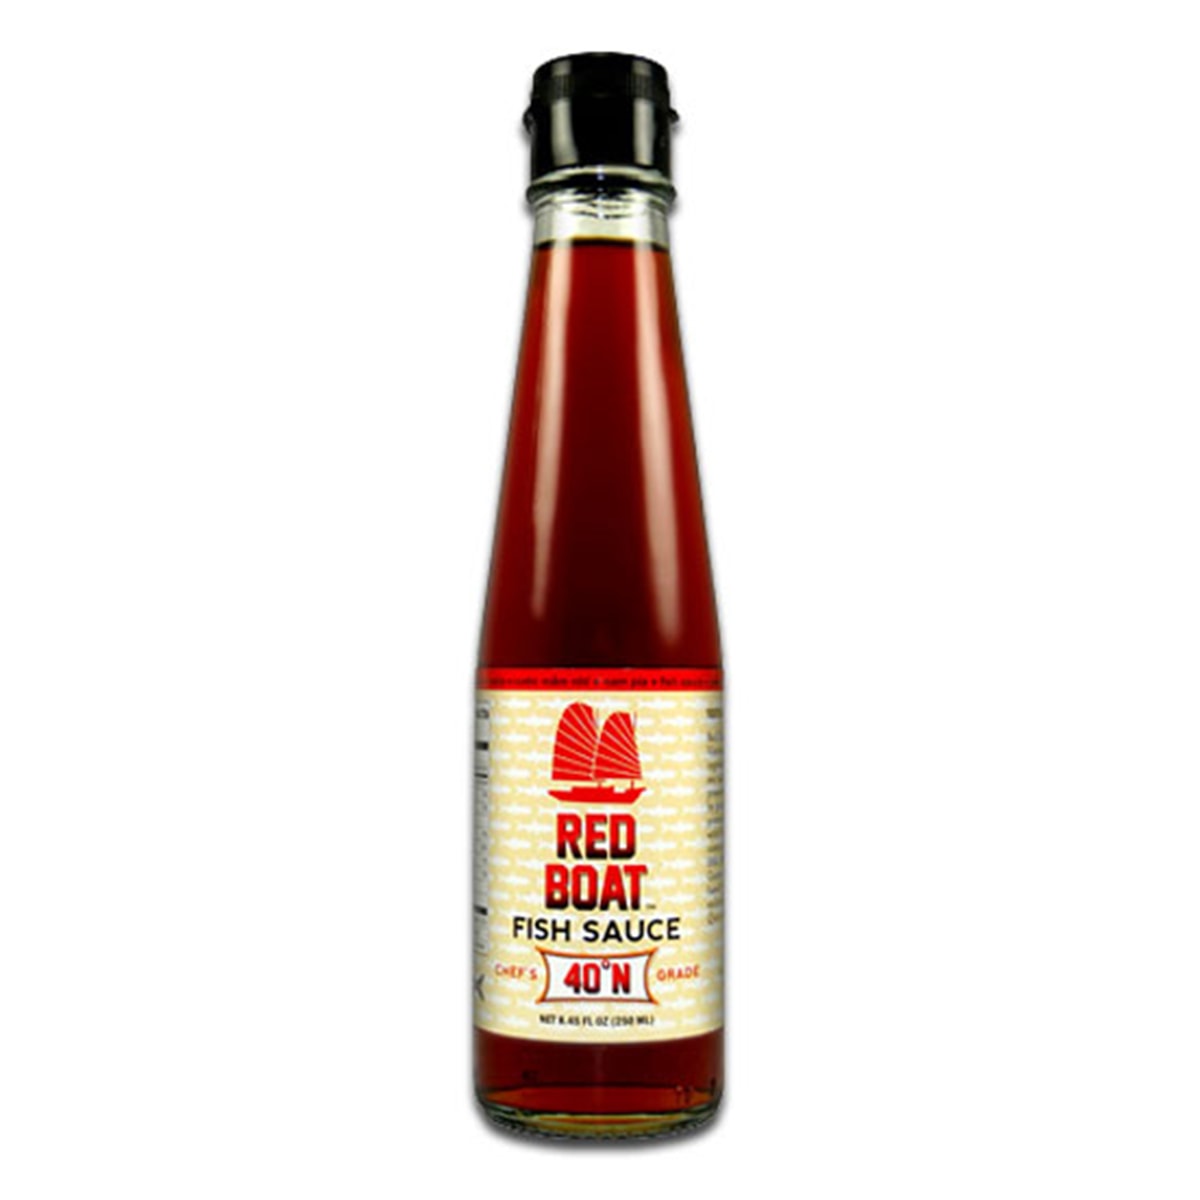 Buy Red Boat Premium Fish Sauce 40° N (100% Pure) - 250 ml